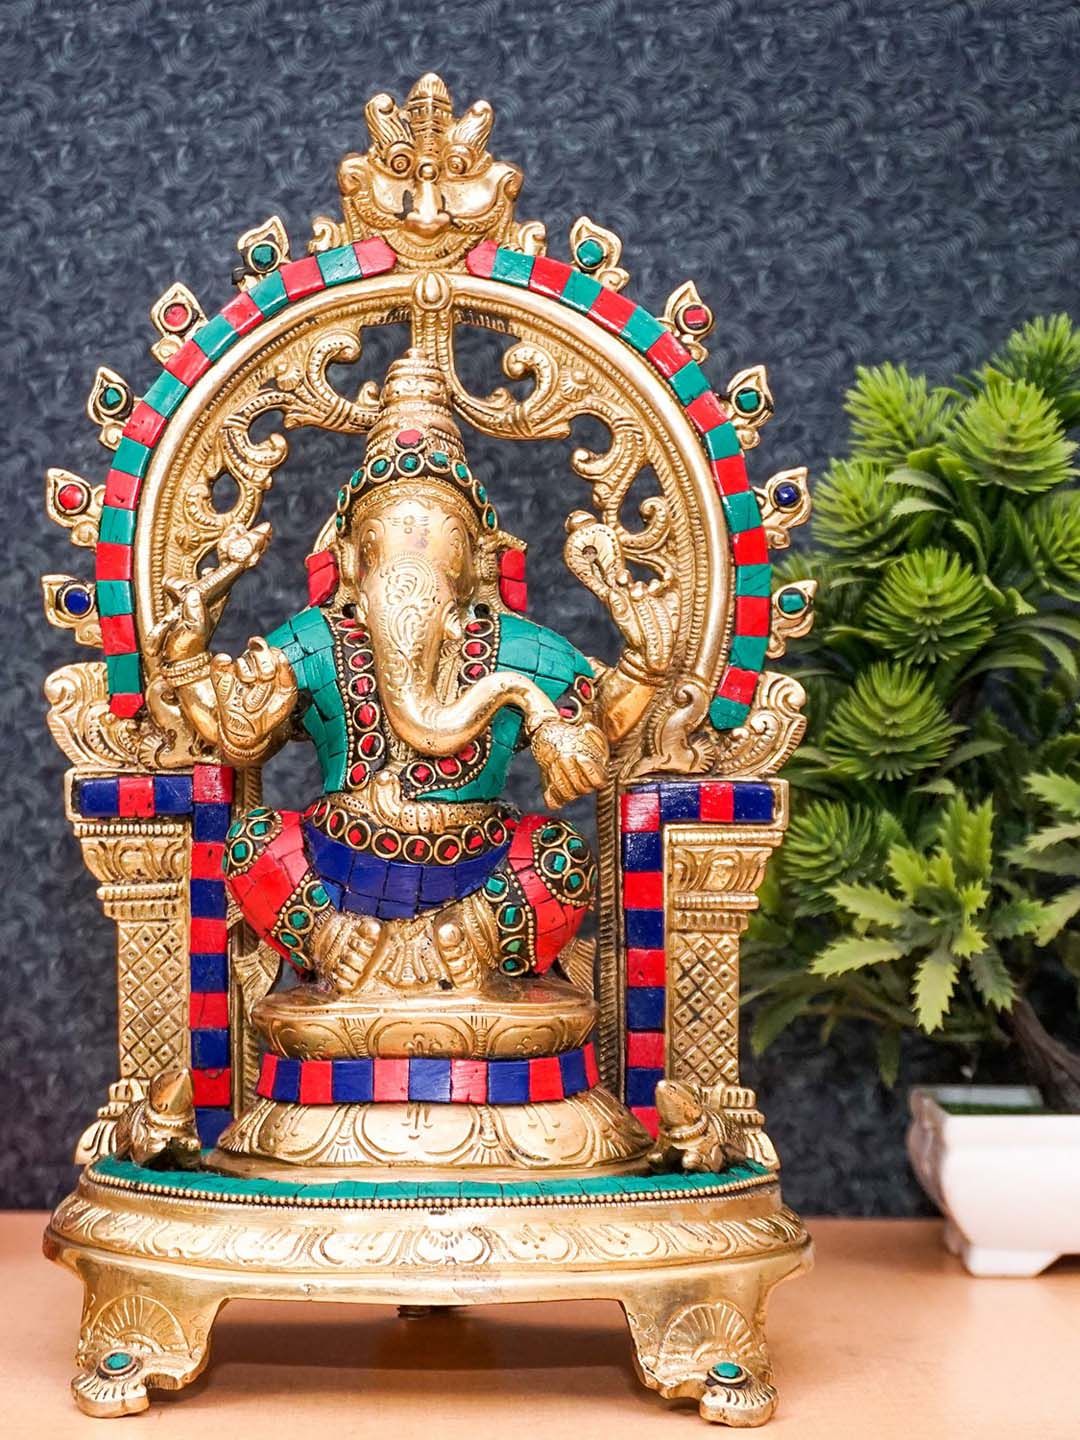 StatueStudio Gold Tone Brass Large Ganpati Statue Price in India